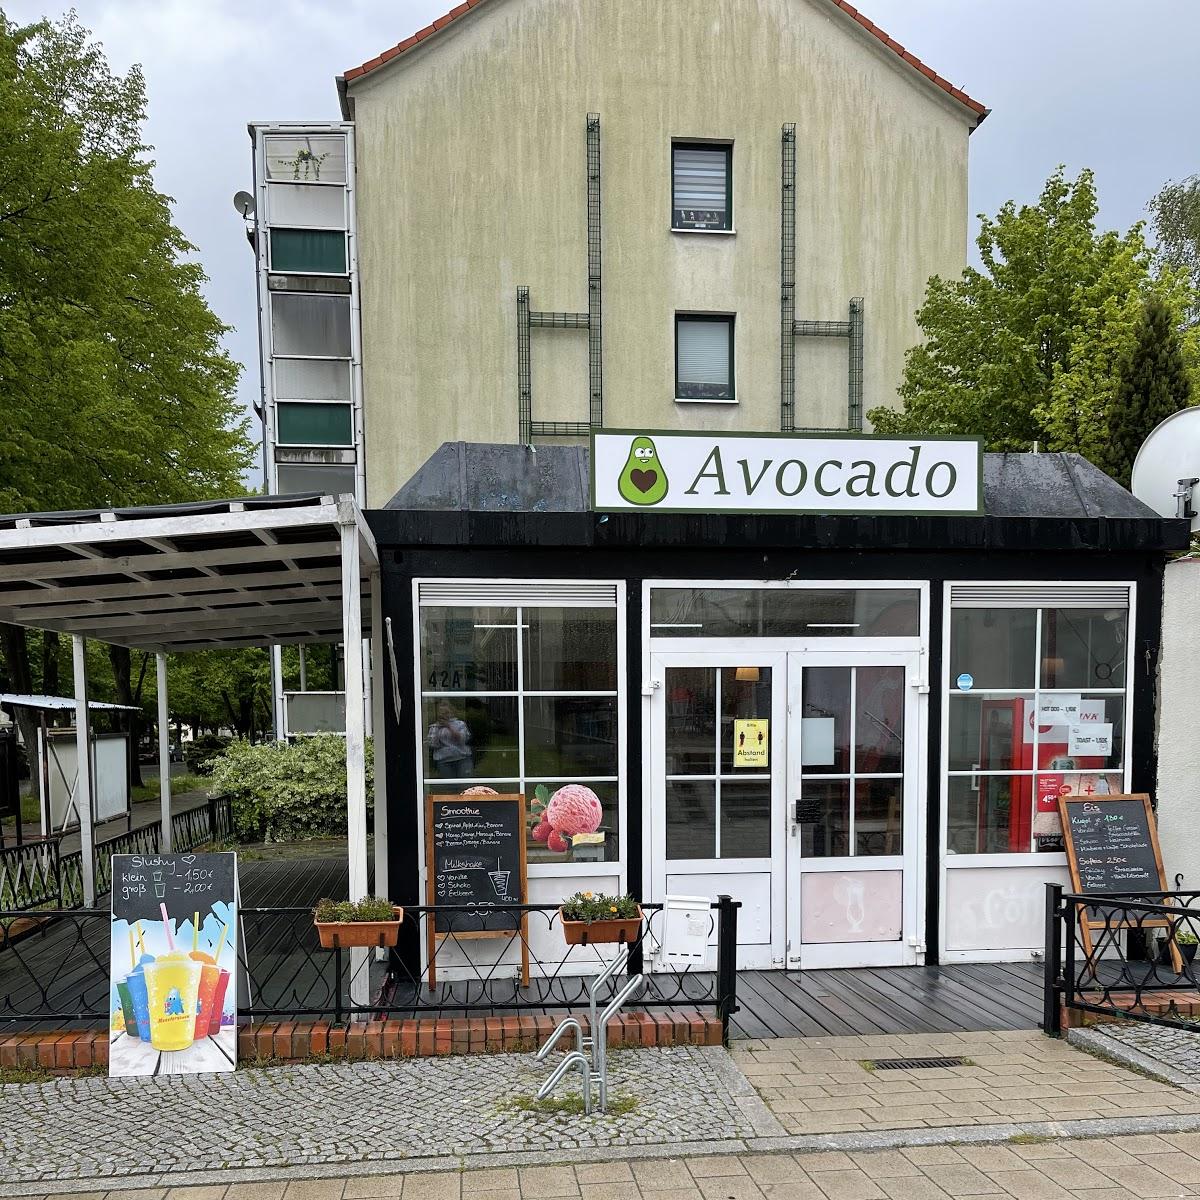 Restaurant "Avocado Bistro & Eiscafé" in Pasewalk